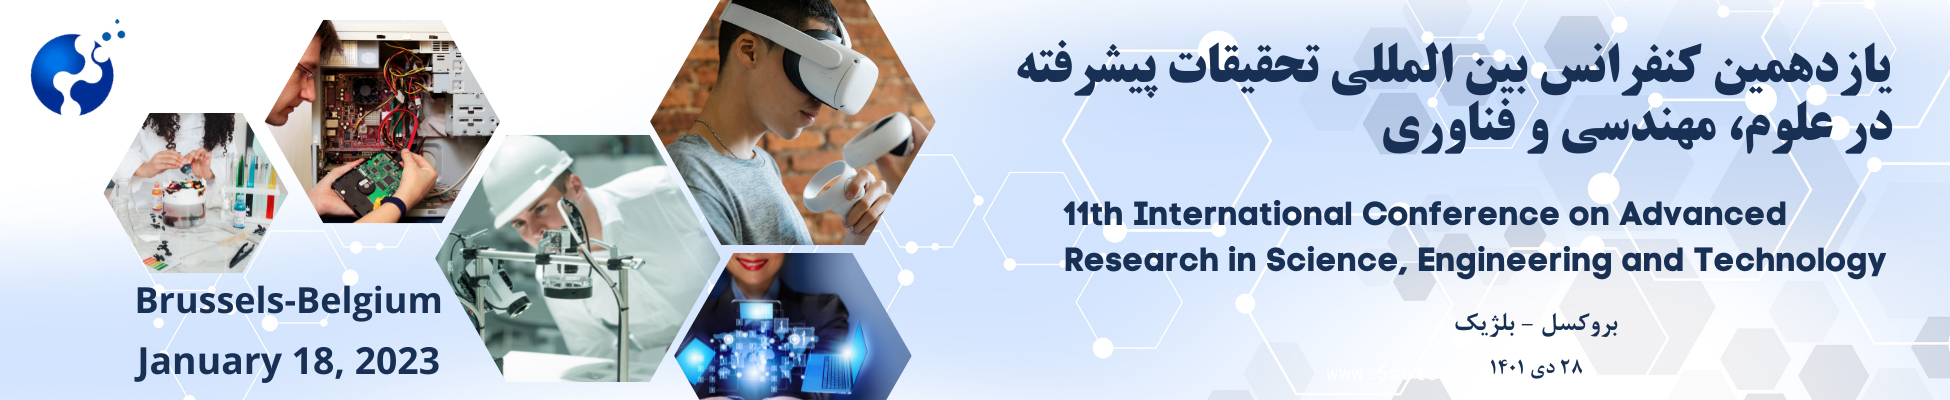 یازدهمین کنفرانس بین المللی تحقیقات پیشرفته در علوم، مهندسی و فناوری